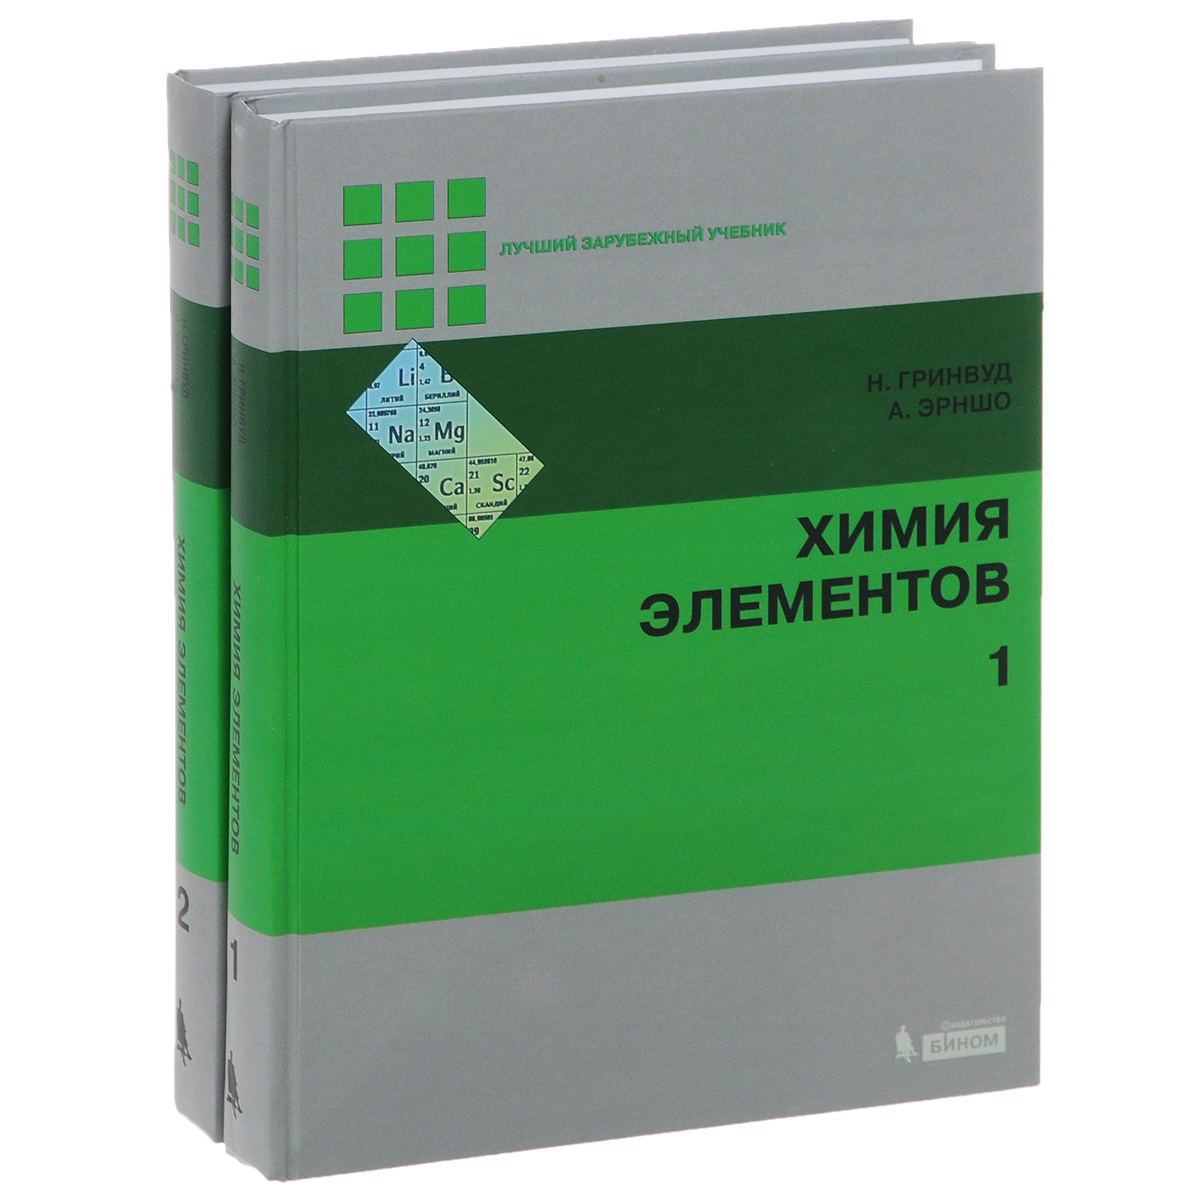 Химия элементов. В 2 томах (комплект). Н. Гринвуд, А. Эрншо